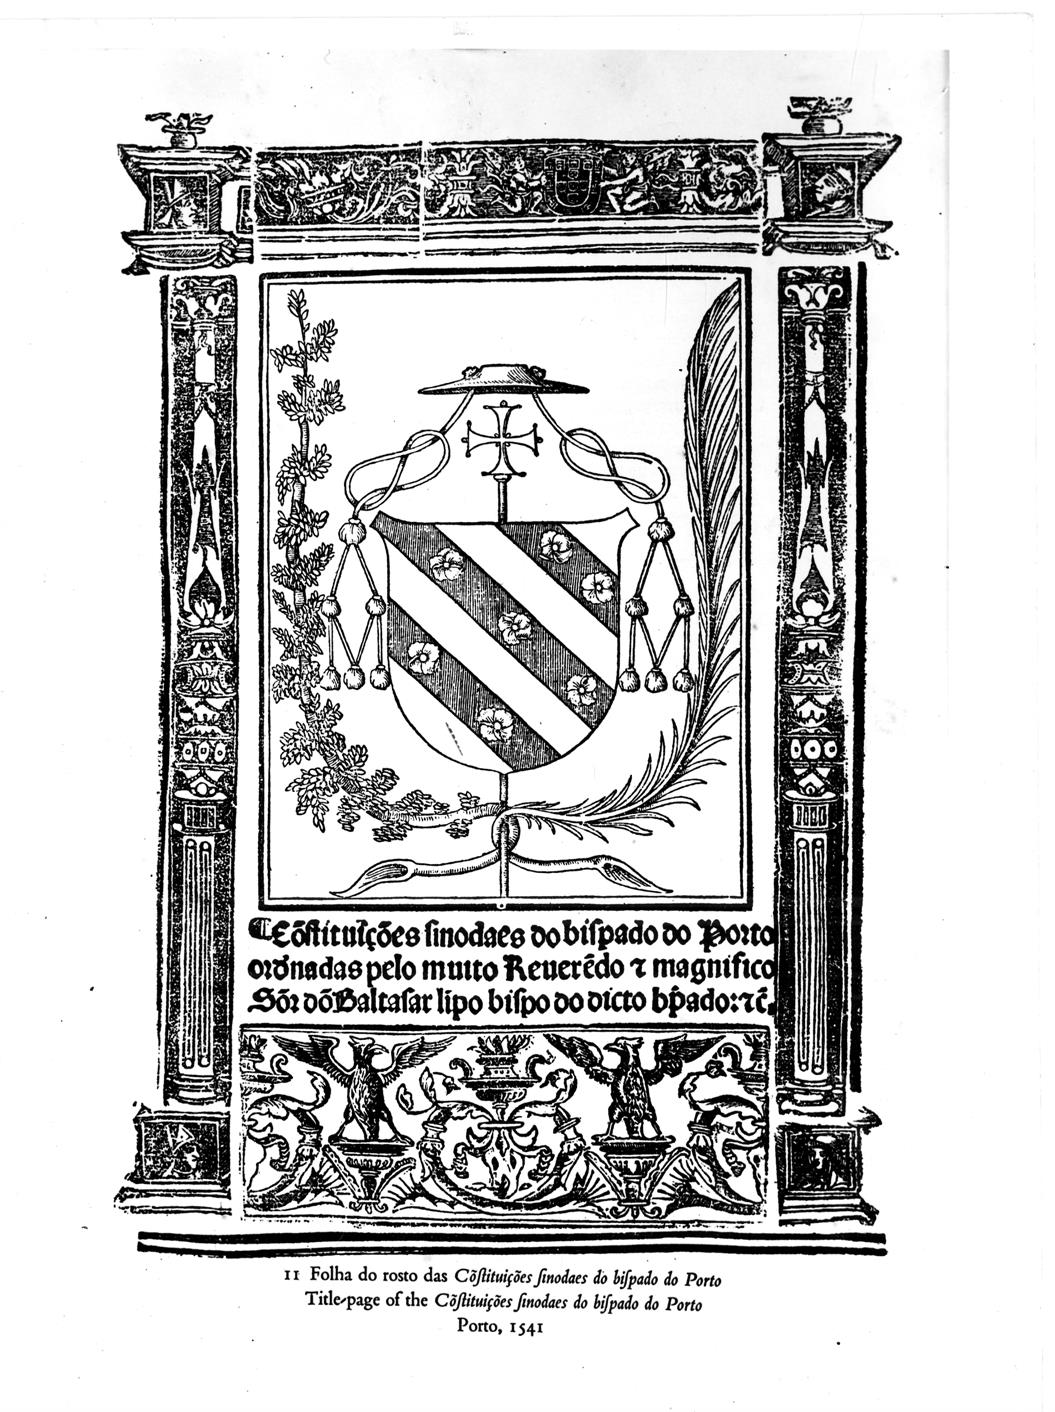 O Porto e a Europa do renascimento : constituições sinodais do bispado do Porto, 1541